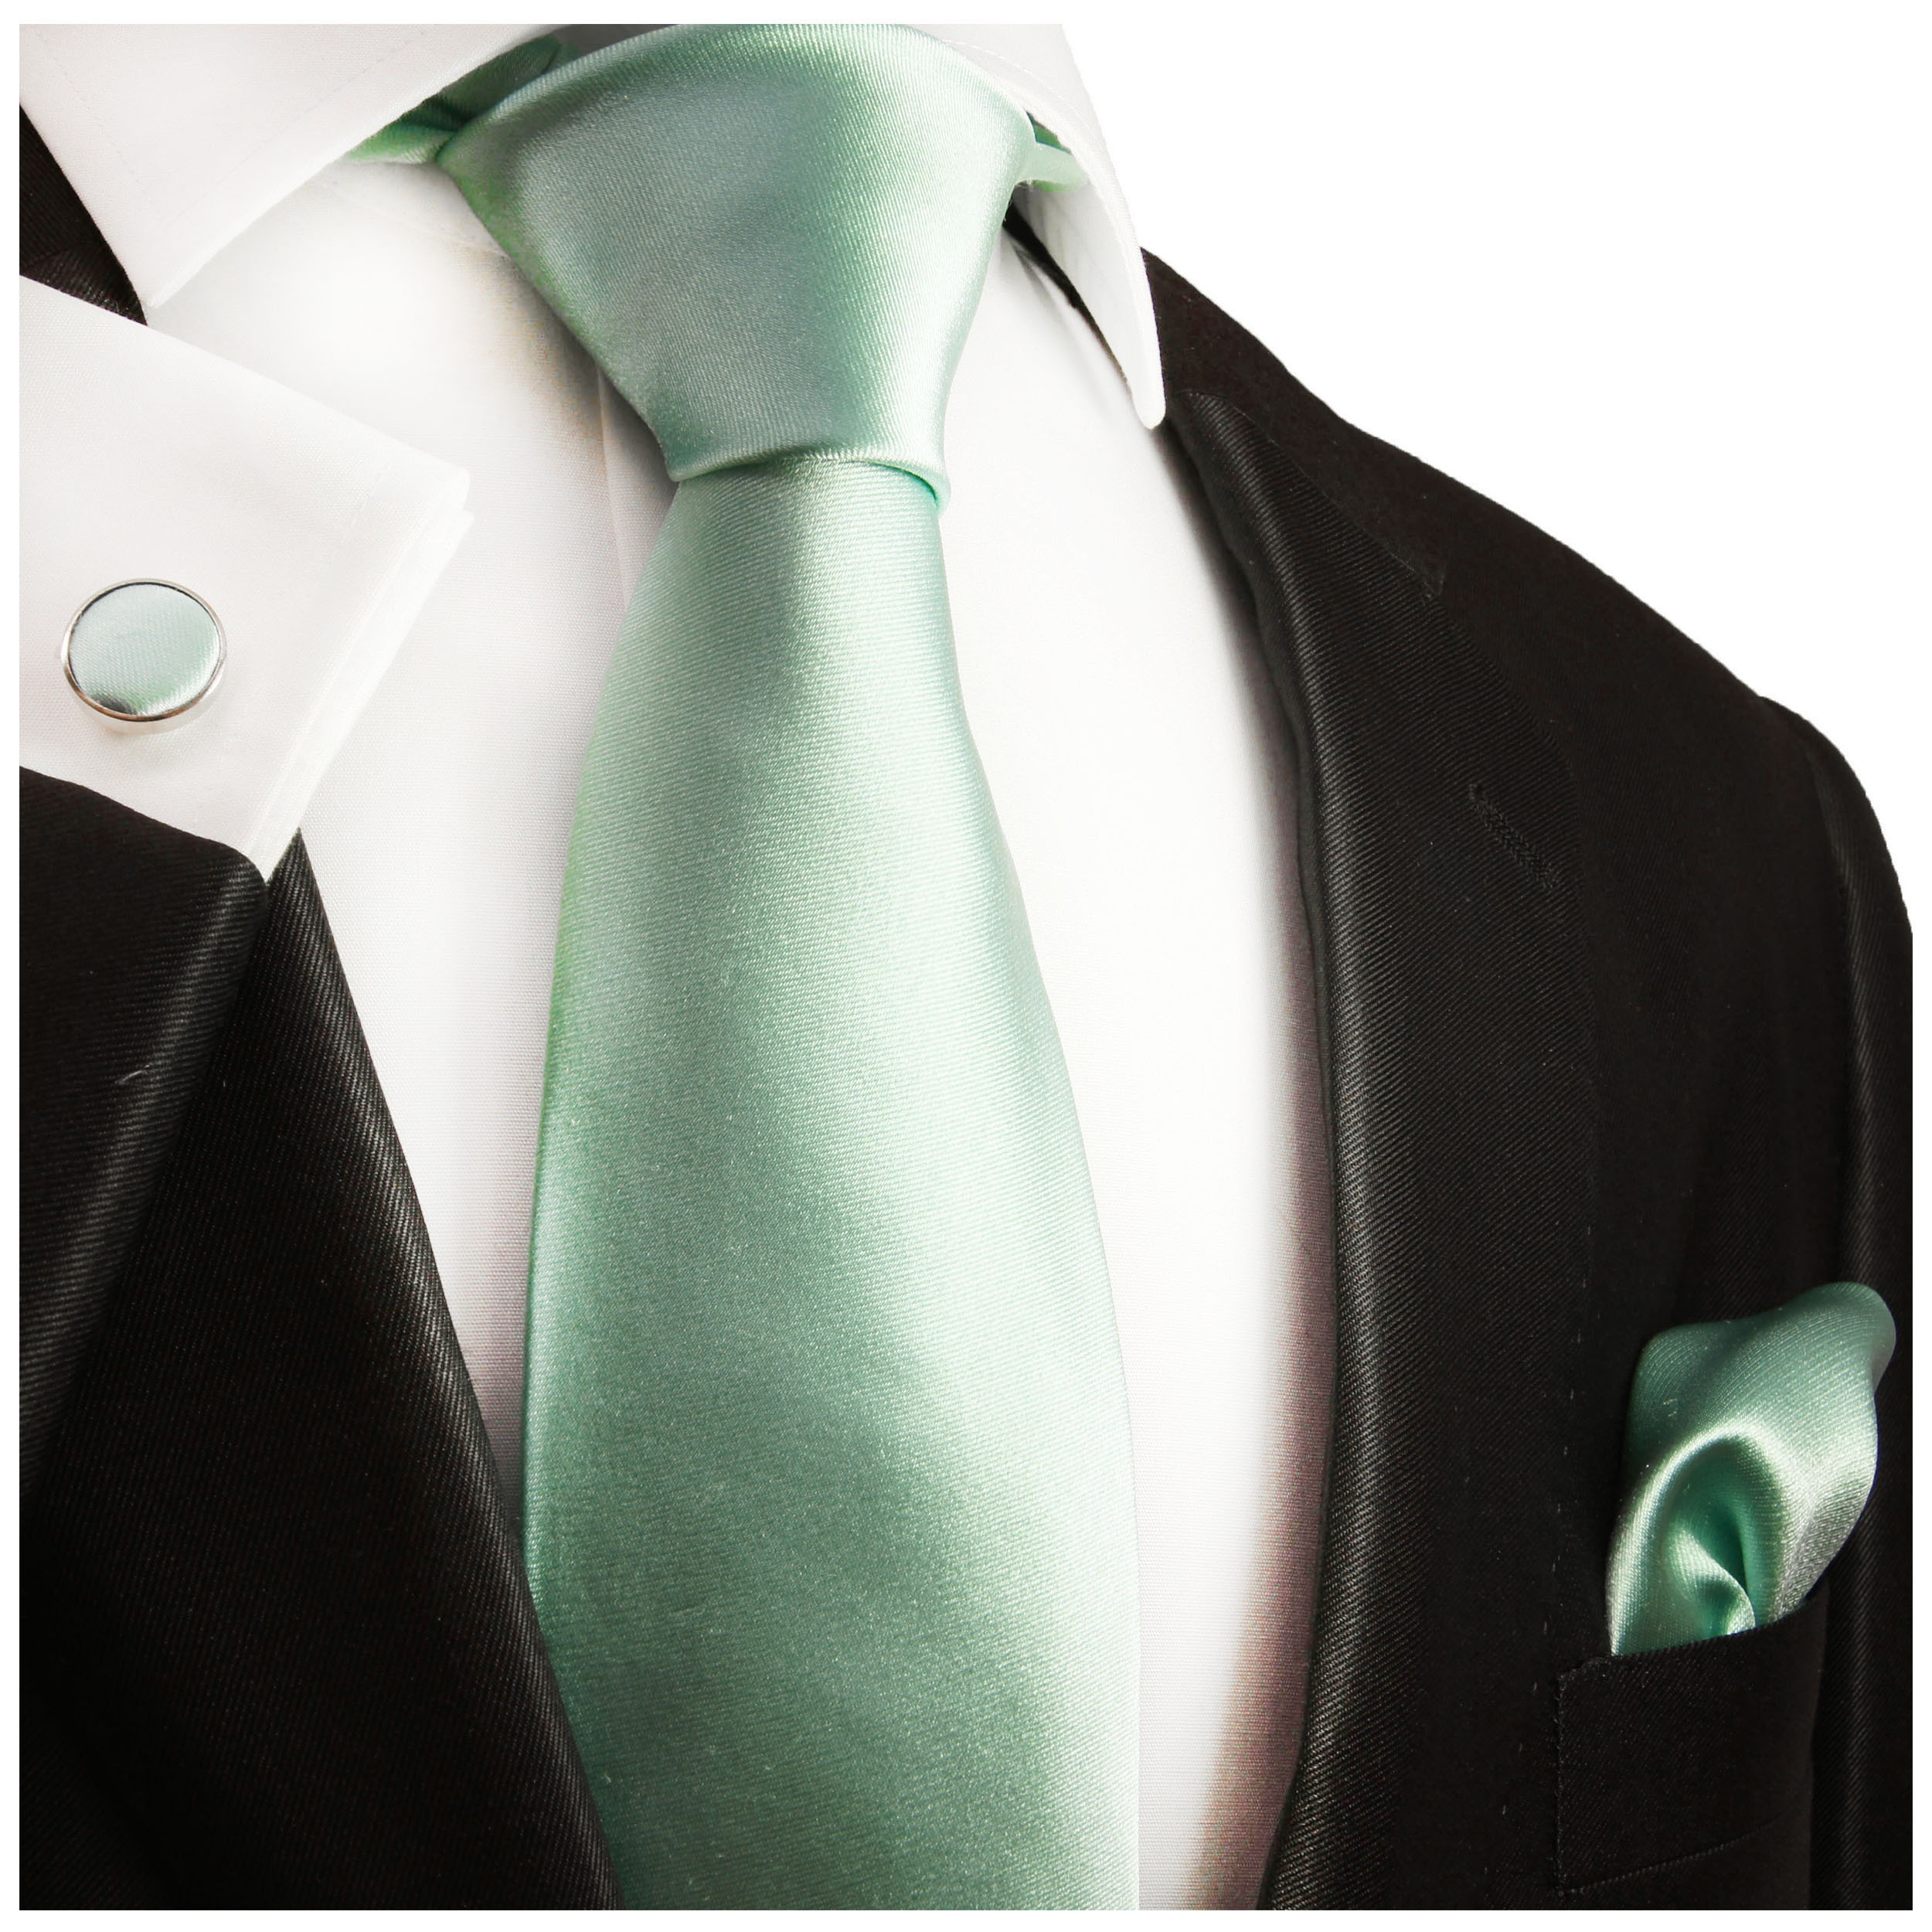 Krawatte mint grün uni 488 | JETZT BESTELLEN - Paul Malone Shop | Breite Krawatten